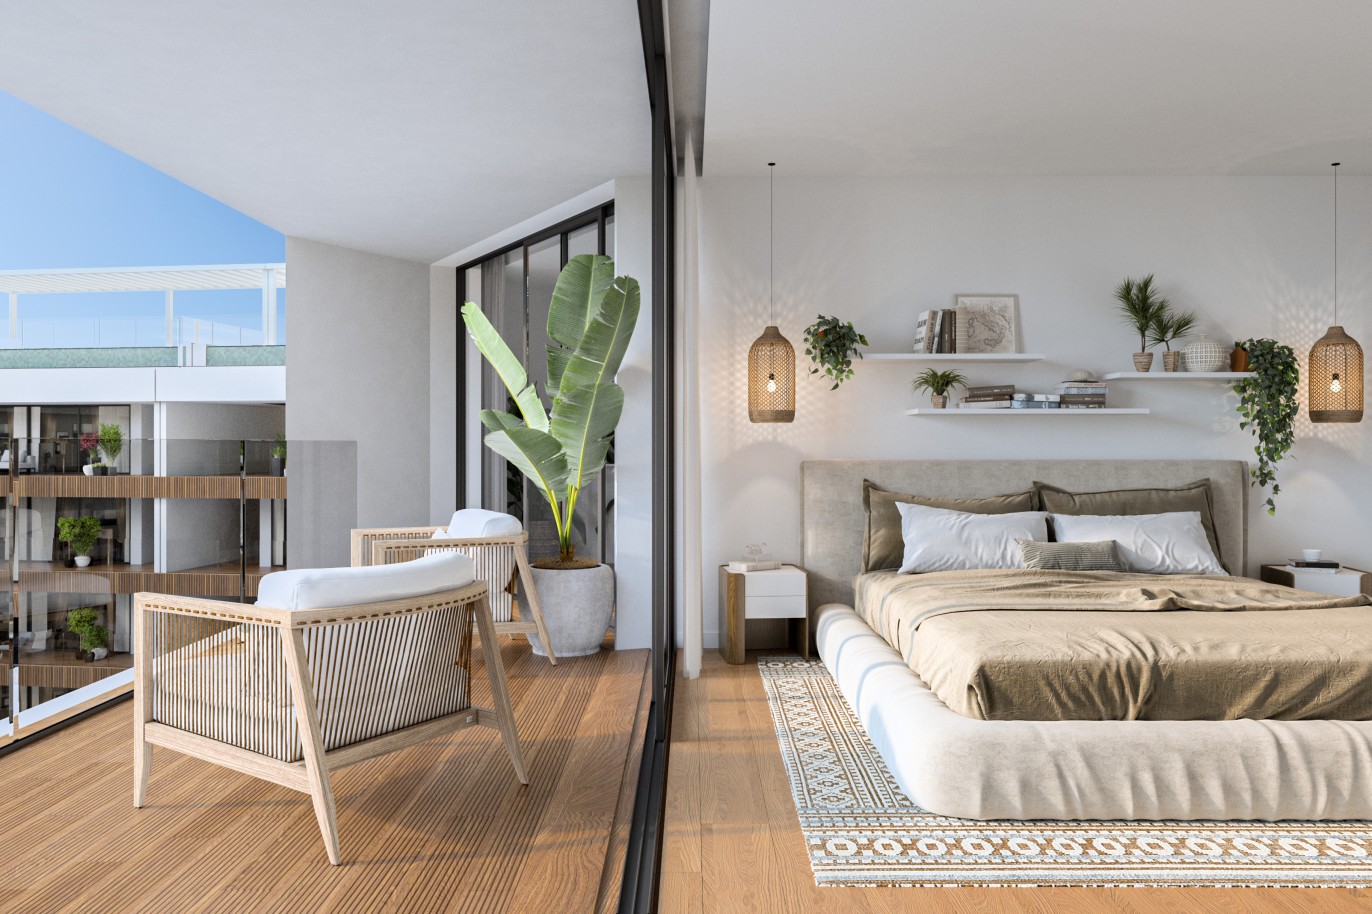 Appartements neufs avec vue sur mer, 1, 2 & 3 chambres, à vendre à Olhão, Algarve_243853